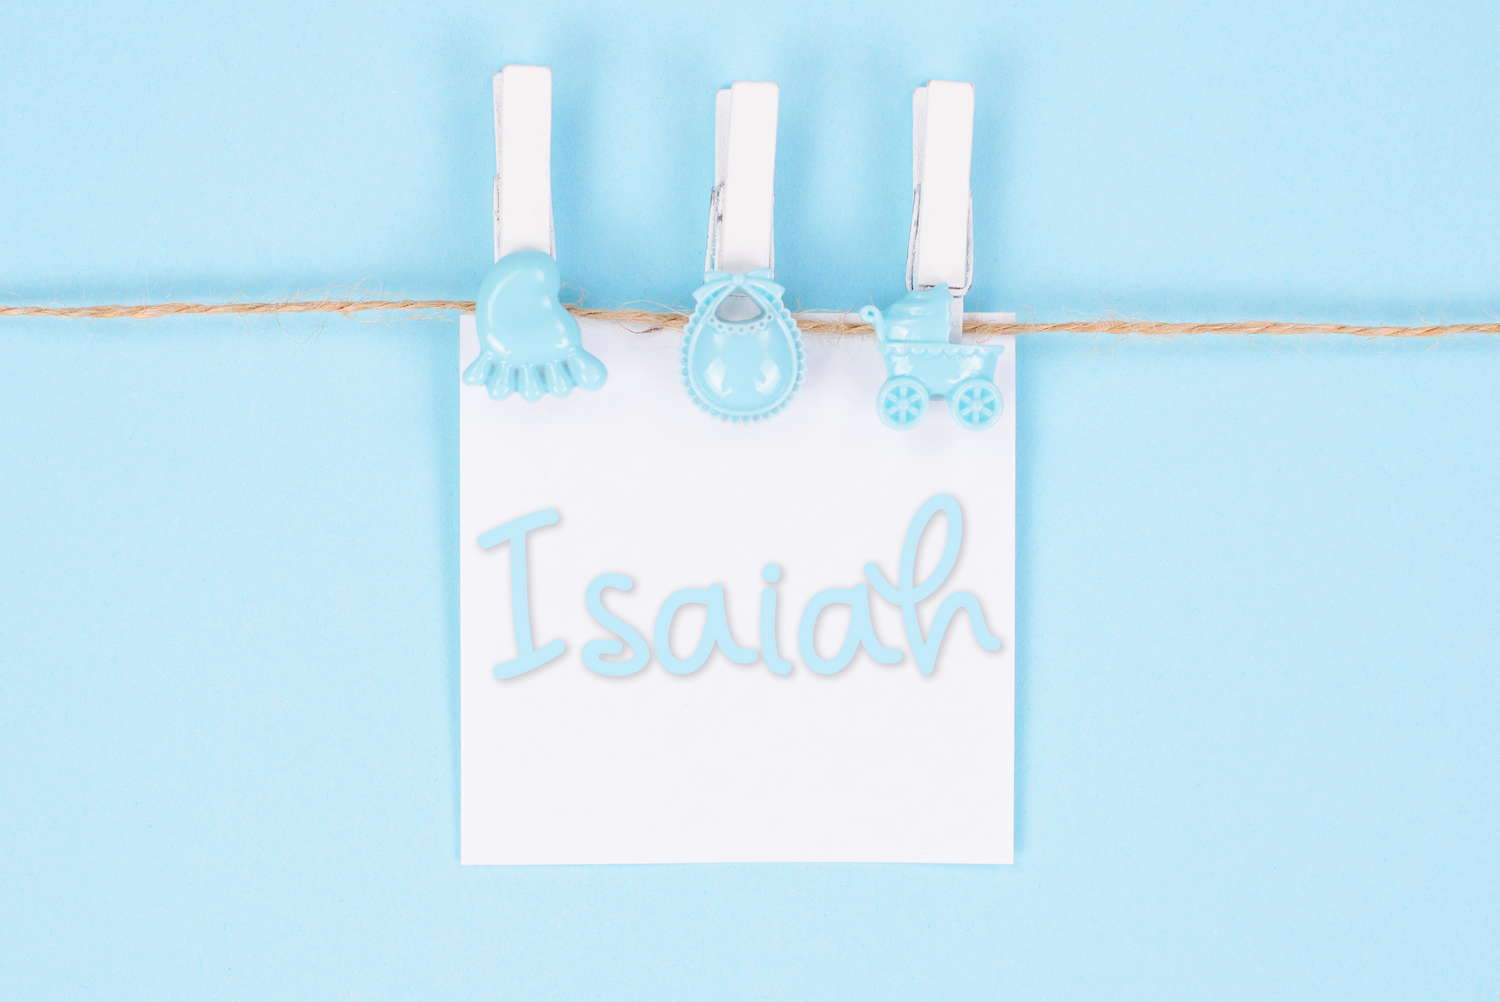 Isaiah Baby Name